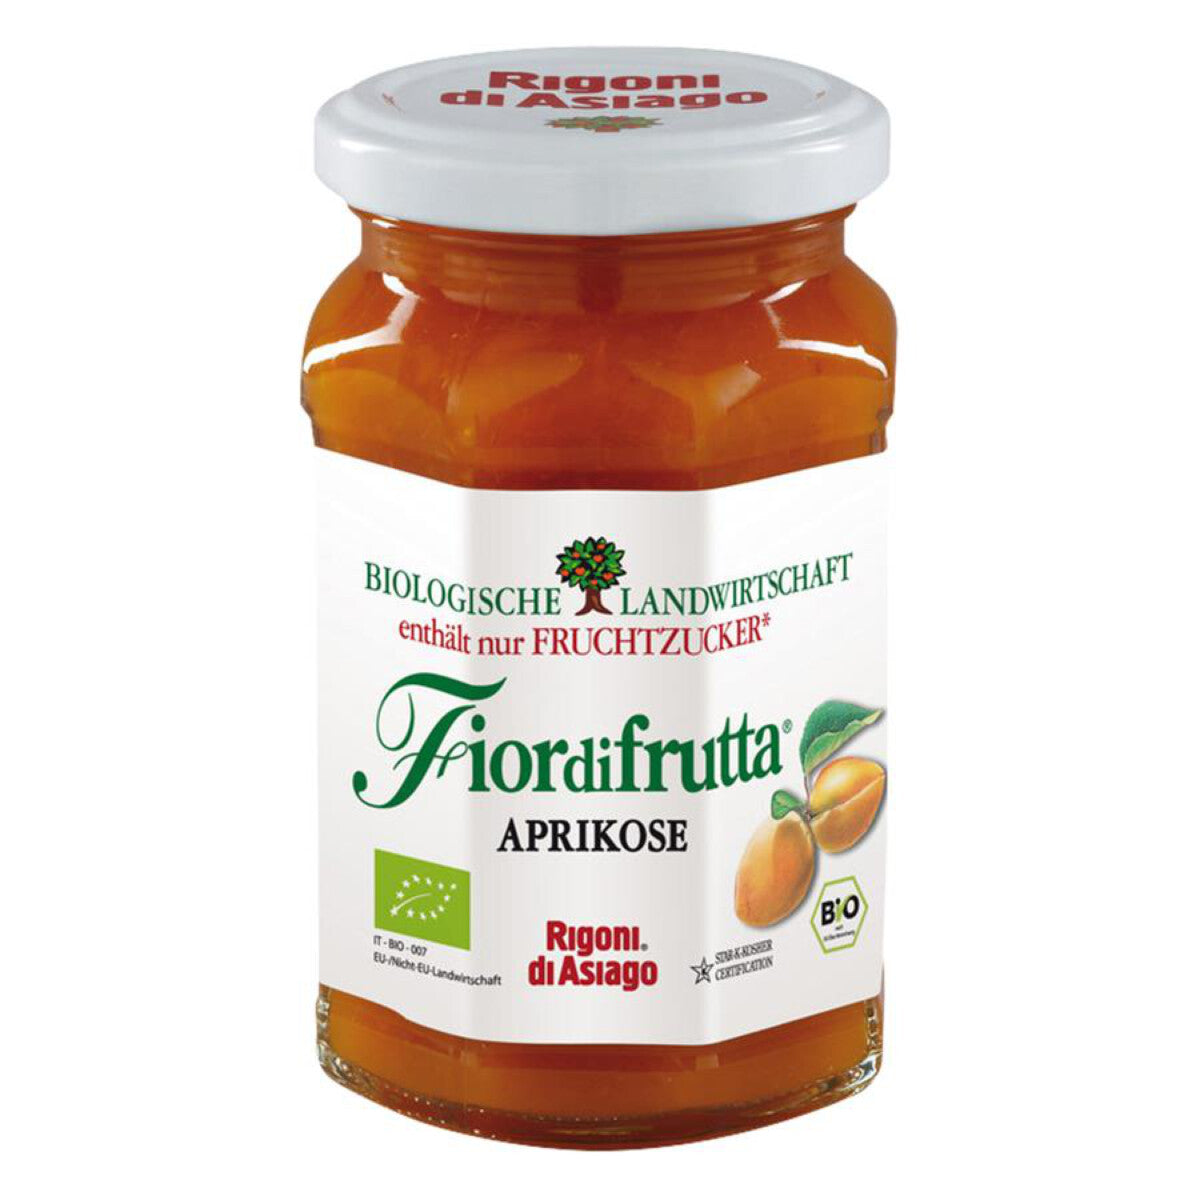 FIOR DI FRUTTA Aprikose-Aufstrich - 250 g